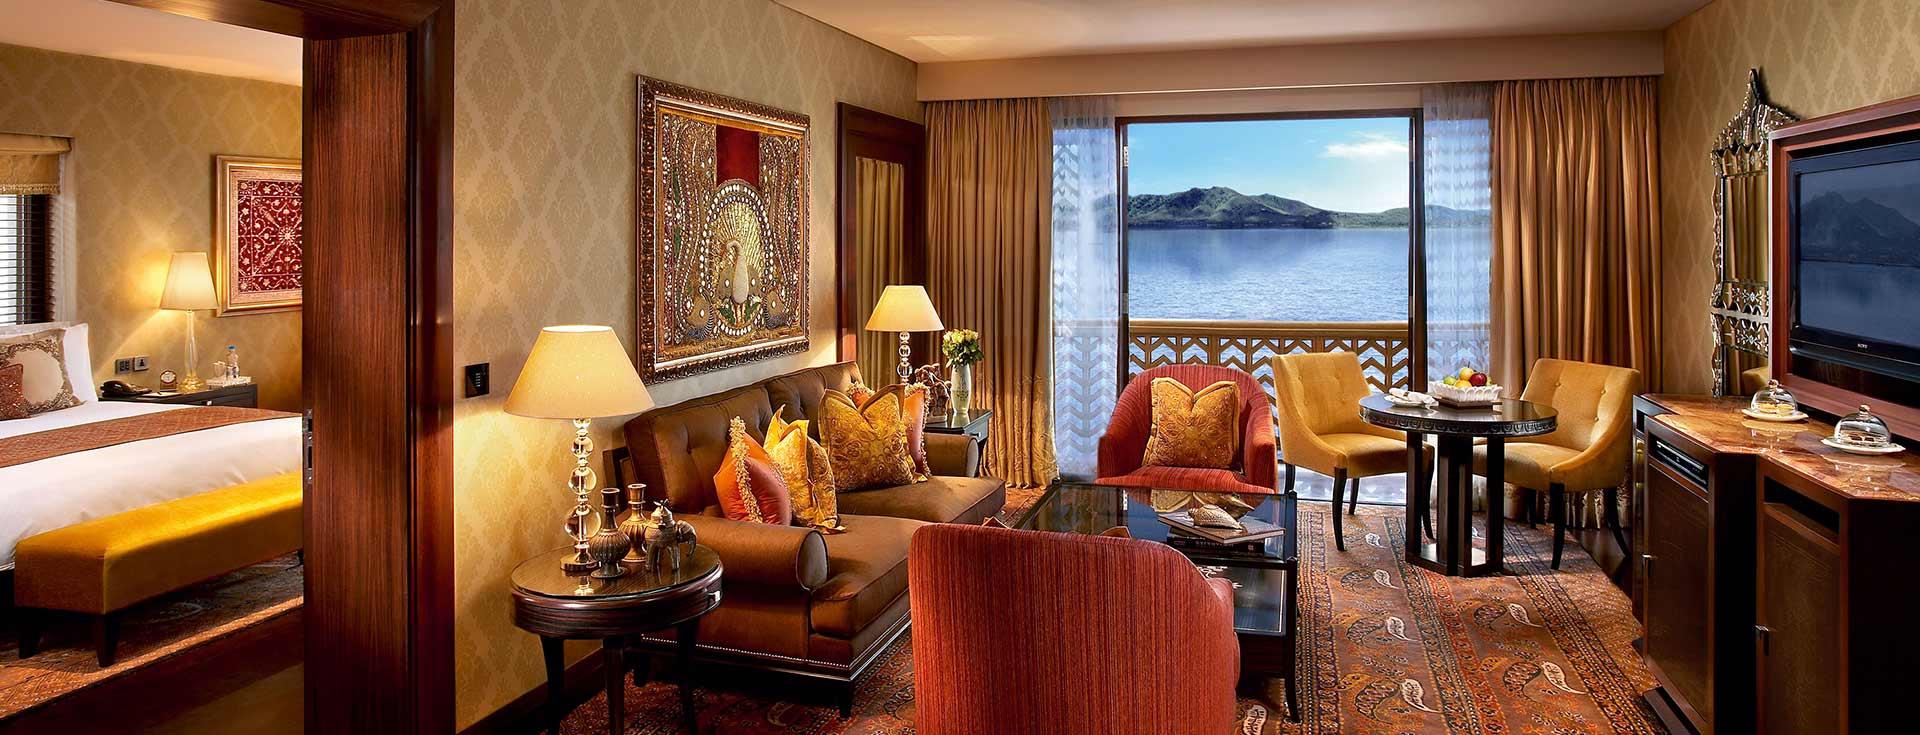 Alila Oceanview Suite | Rooms | Alila Seminyak Beach Resort